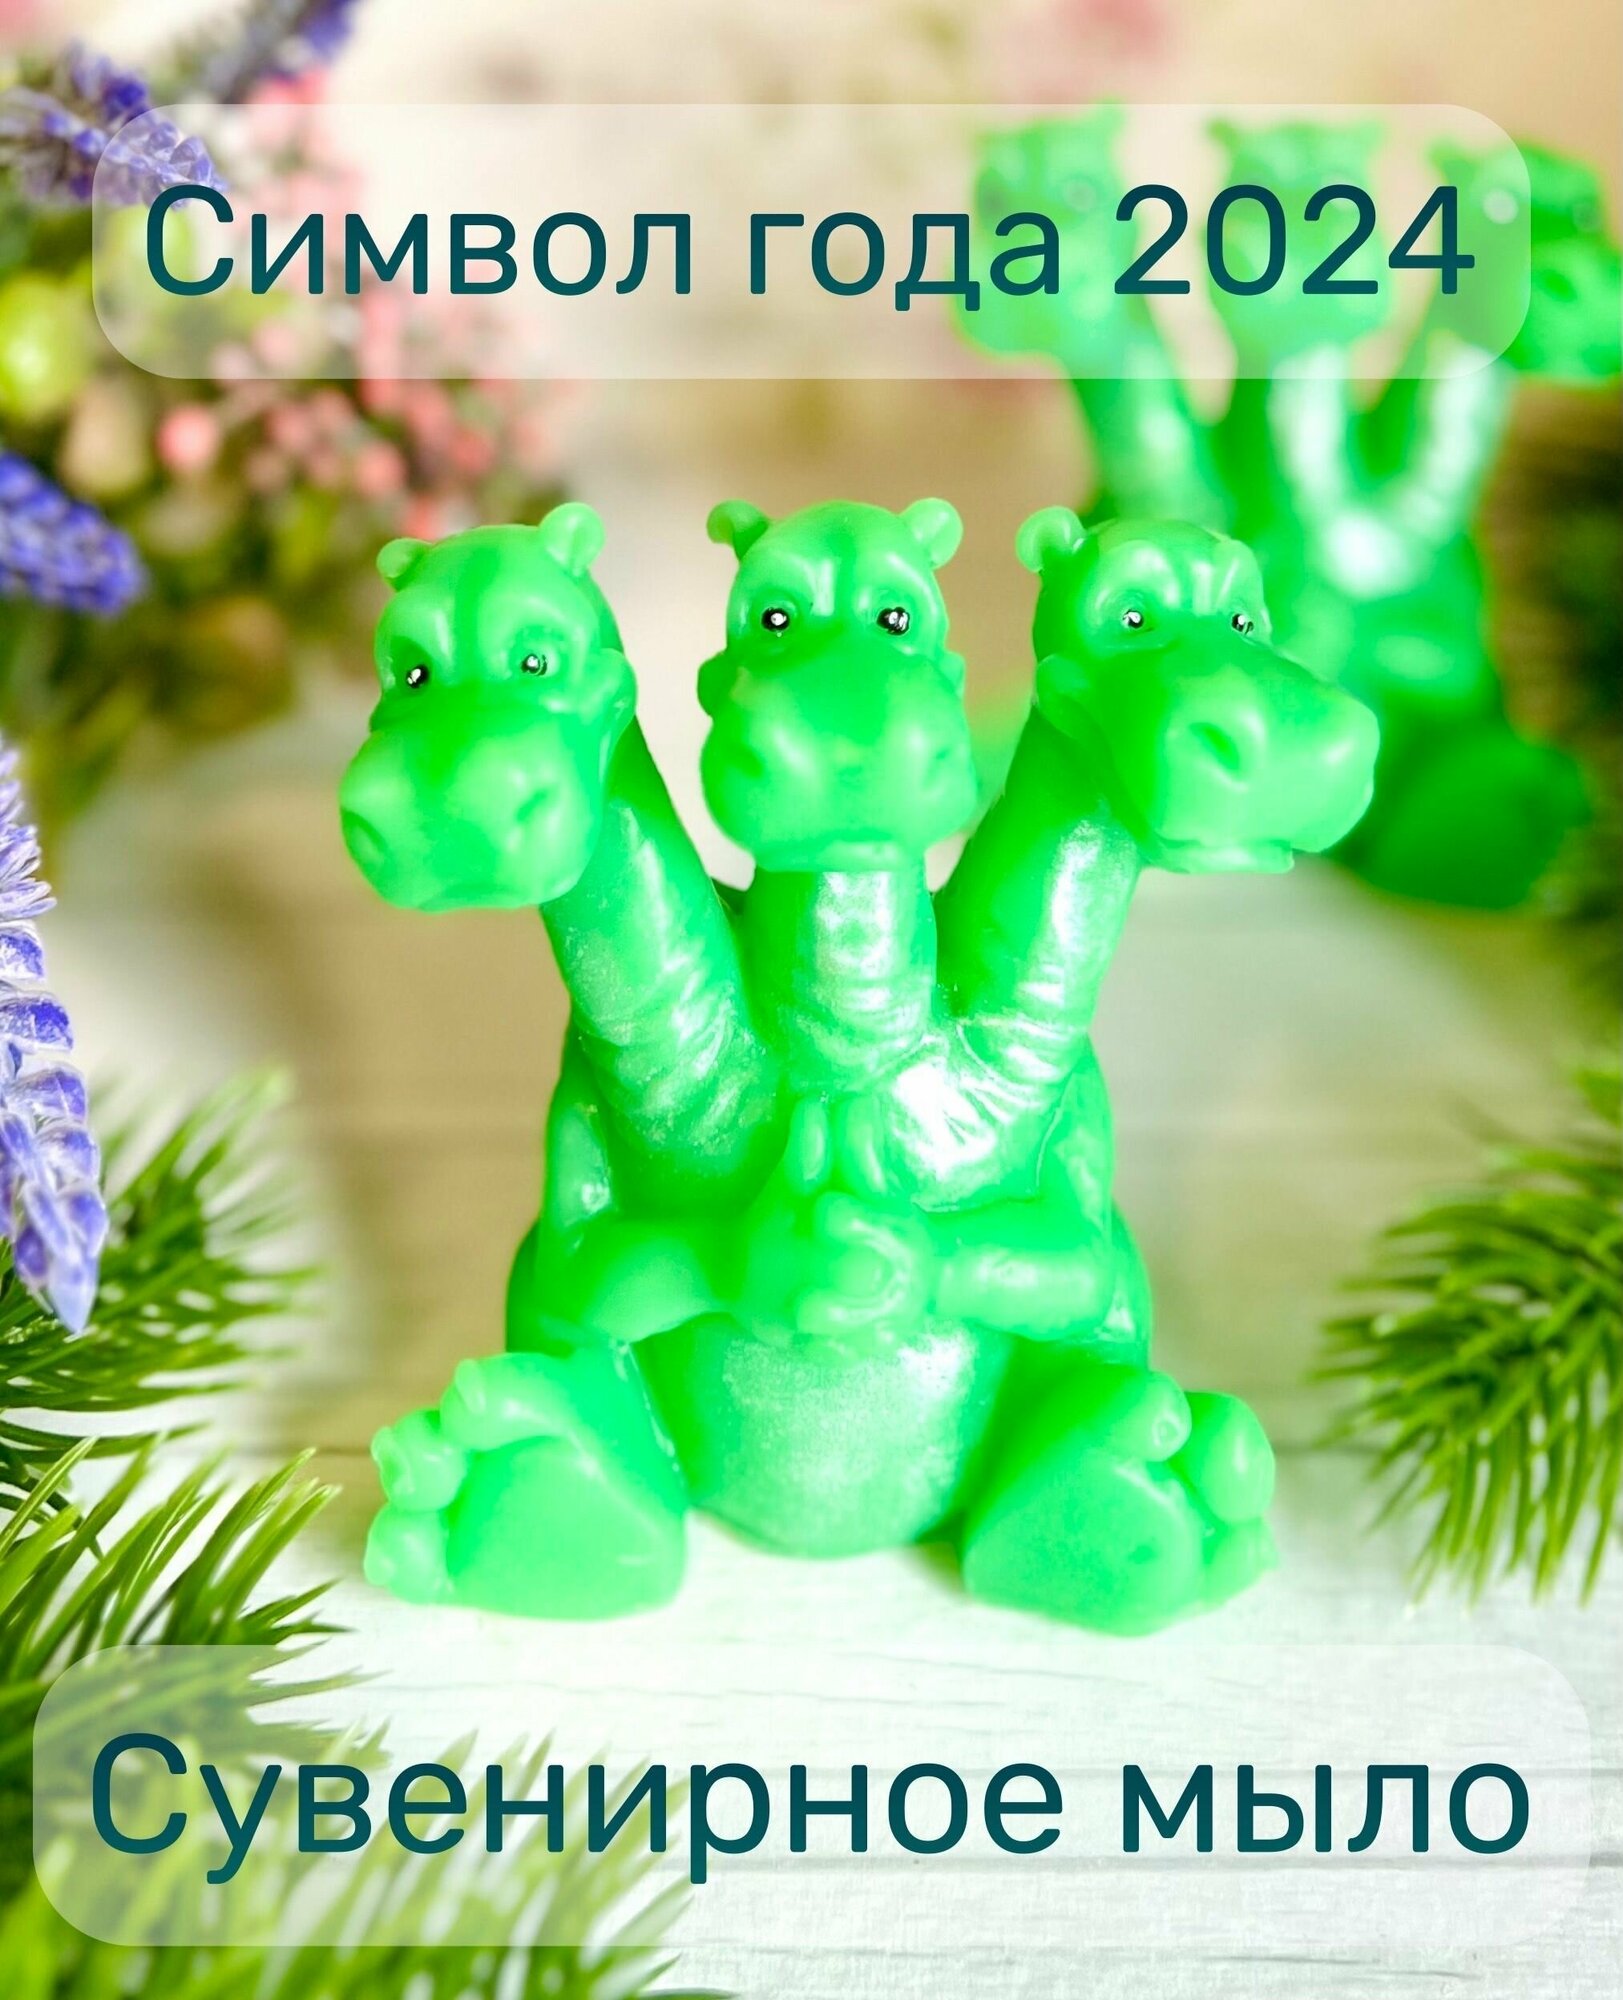 Сувенирное мыло ручной работы дракон Горыныч символ года 2024